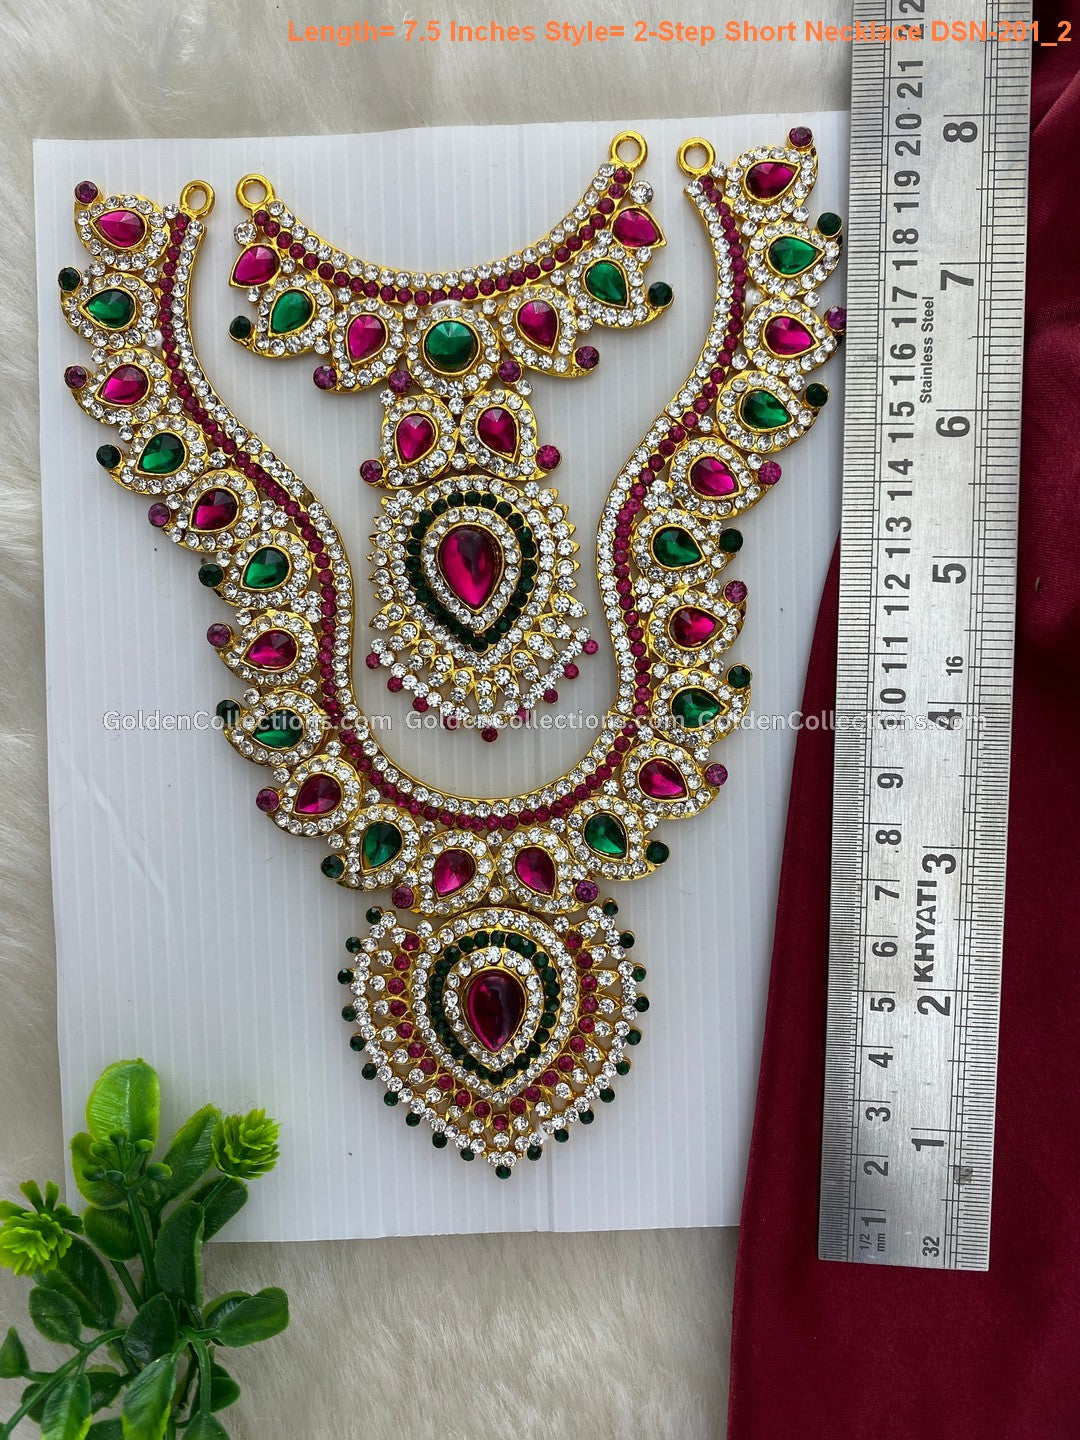 Goddess Lakshmi Short Necklace - Elegant Divine Design - DSN-201 2